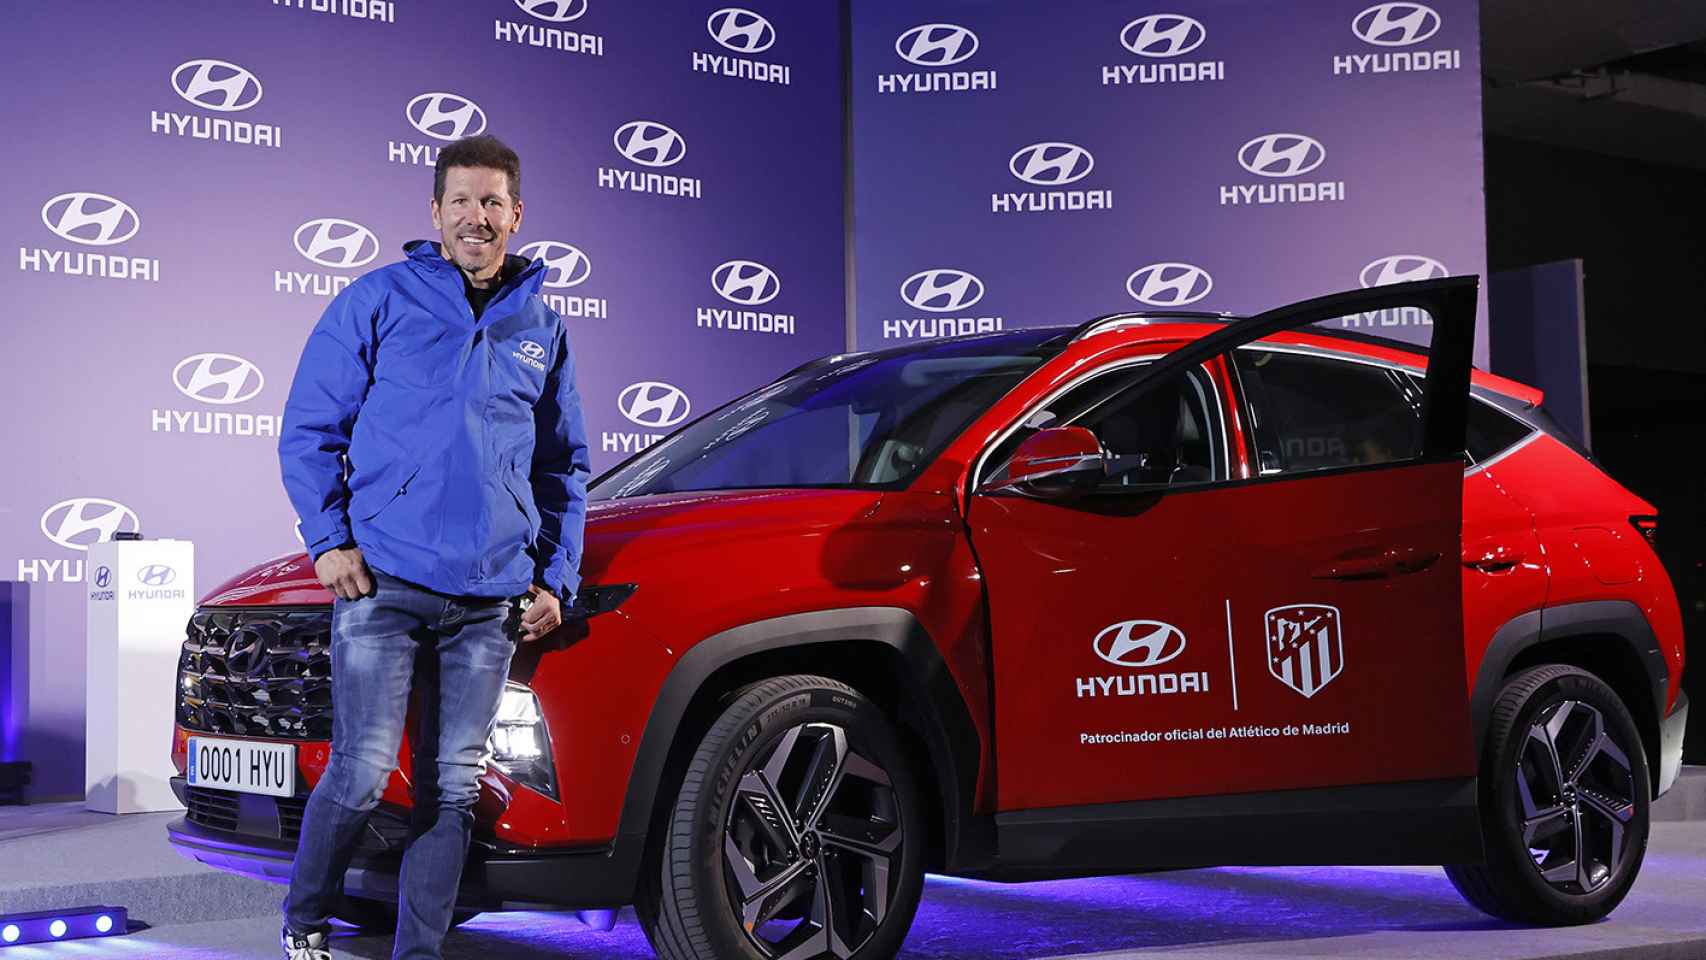 El Atlético de Madrid estrena coche: los jugadores recogen (con sorpresa incluida) los Hyundai Tucson